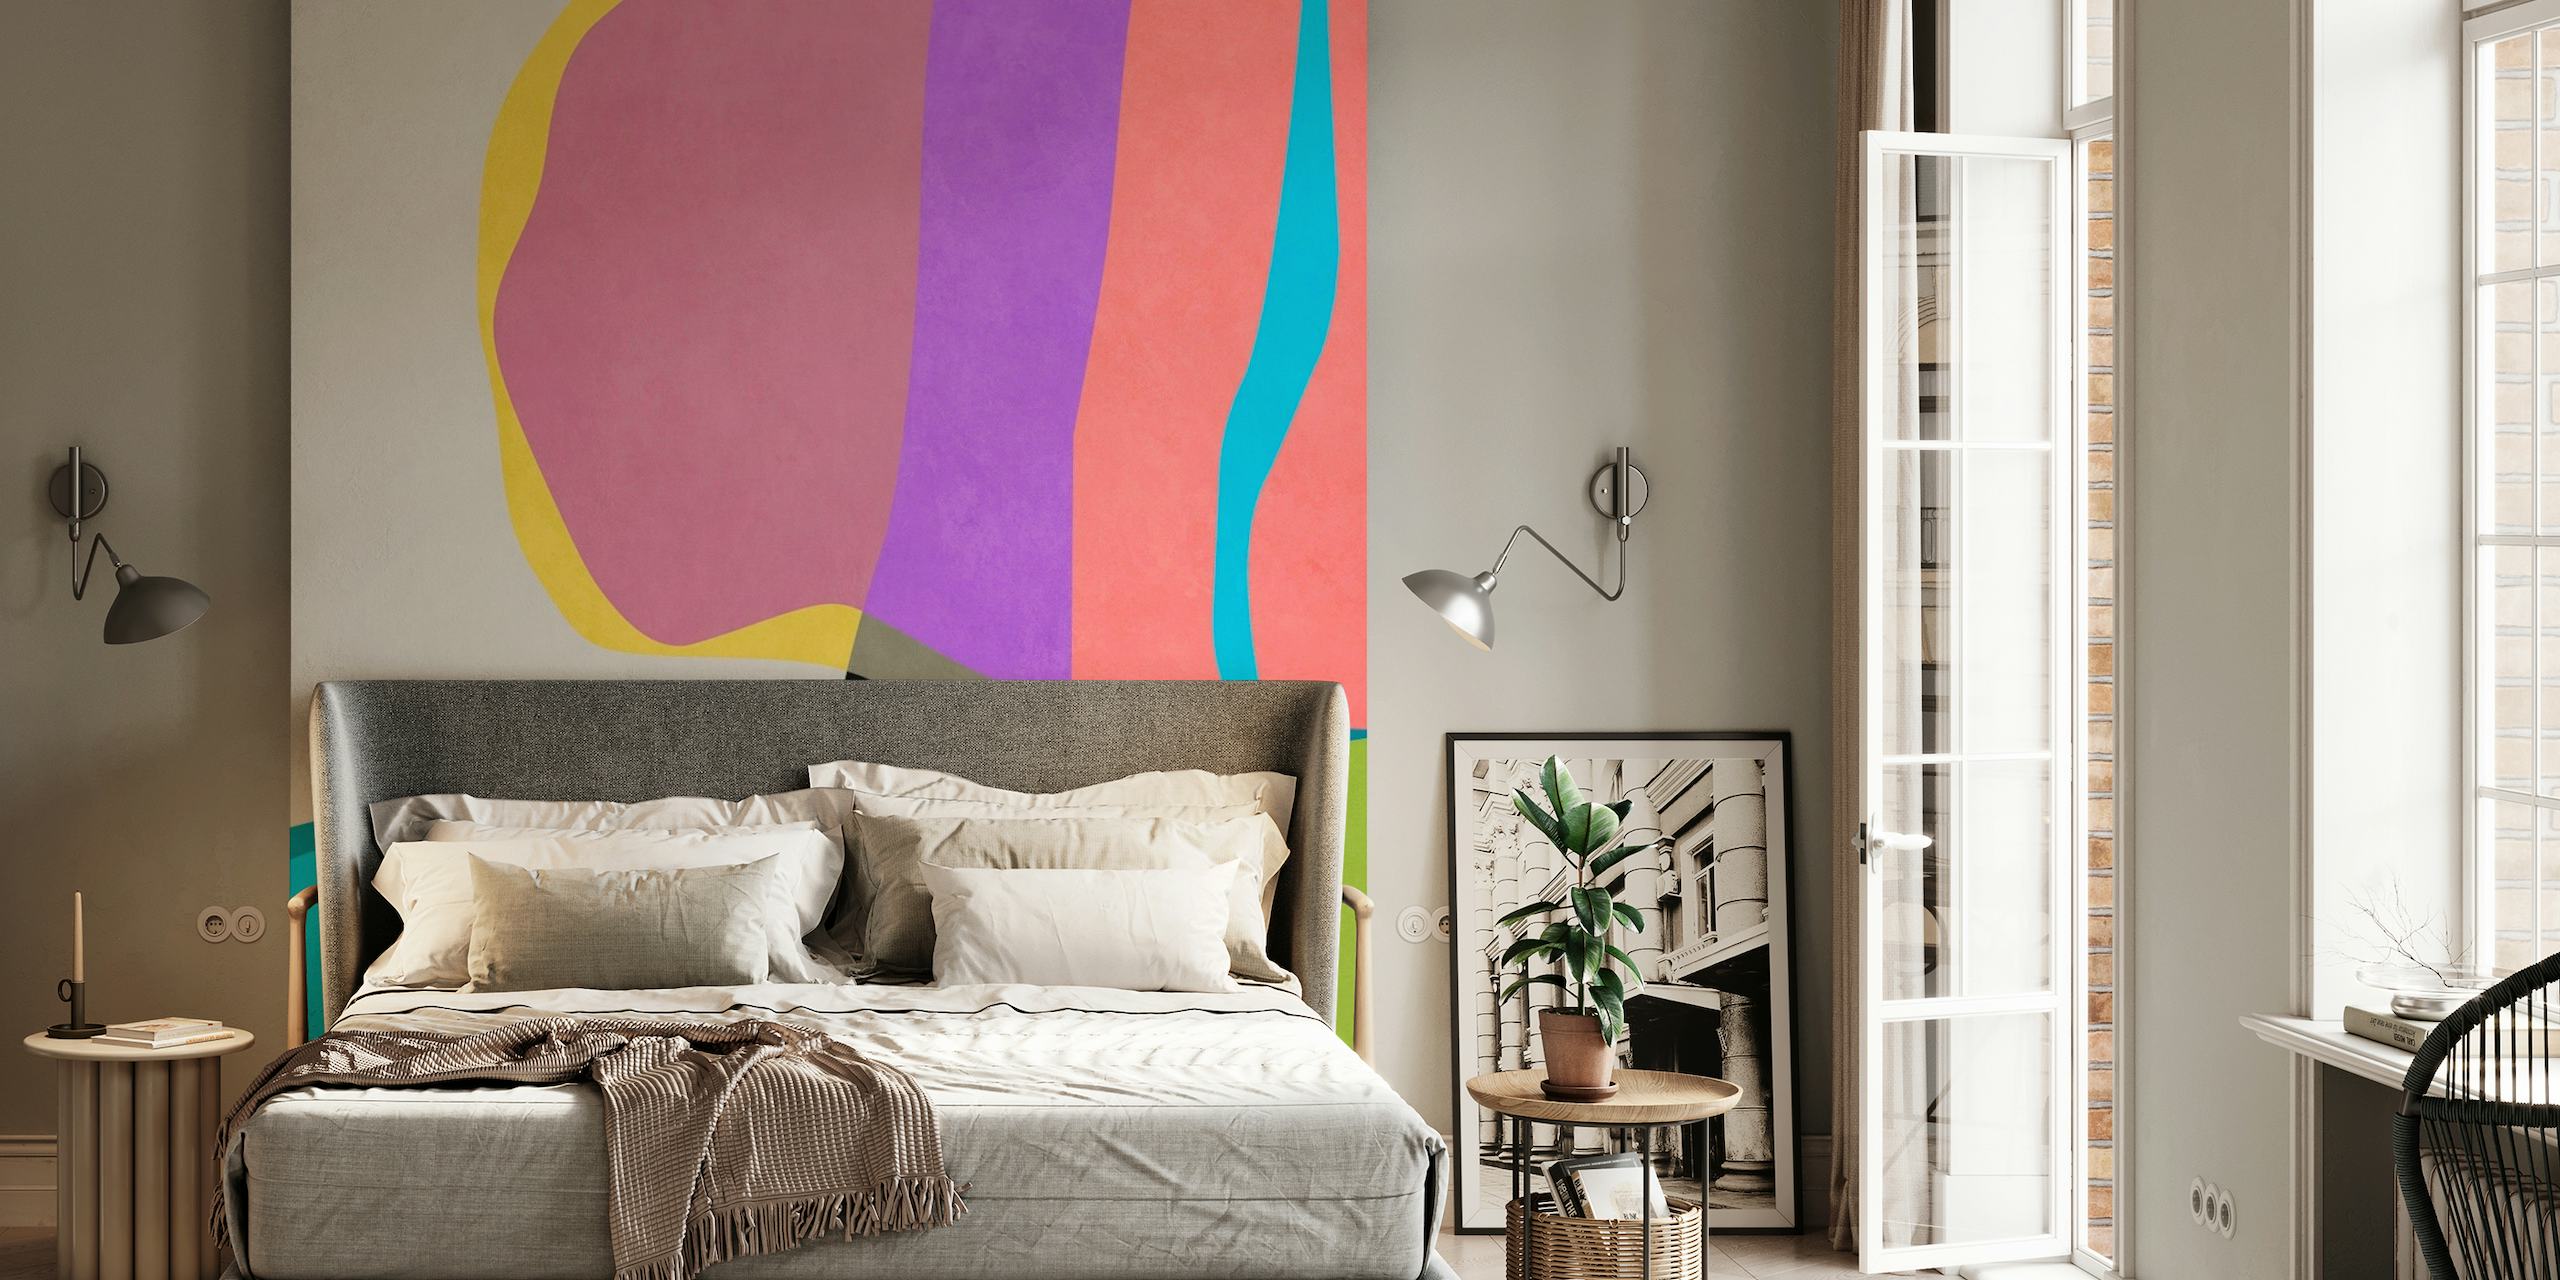 Abstraktes Wandbild mit lebendigen Farben und fließenden Formen, die ein Gefühl von Bewegung erzeugen